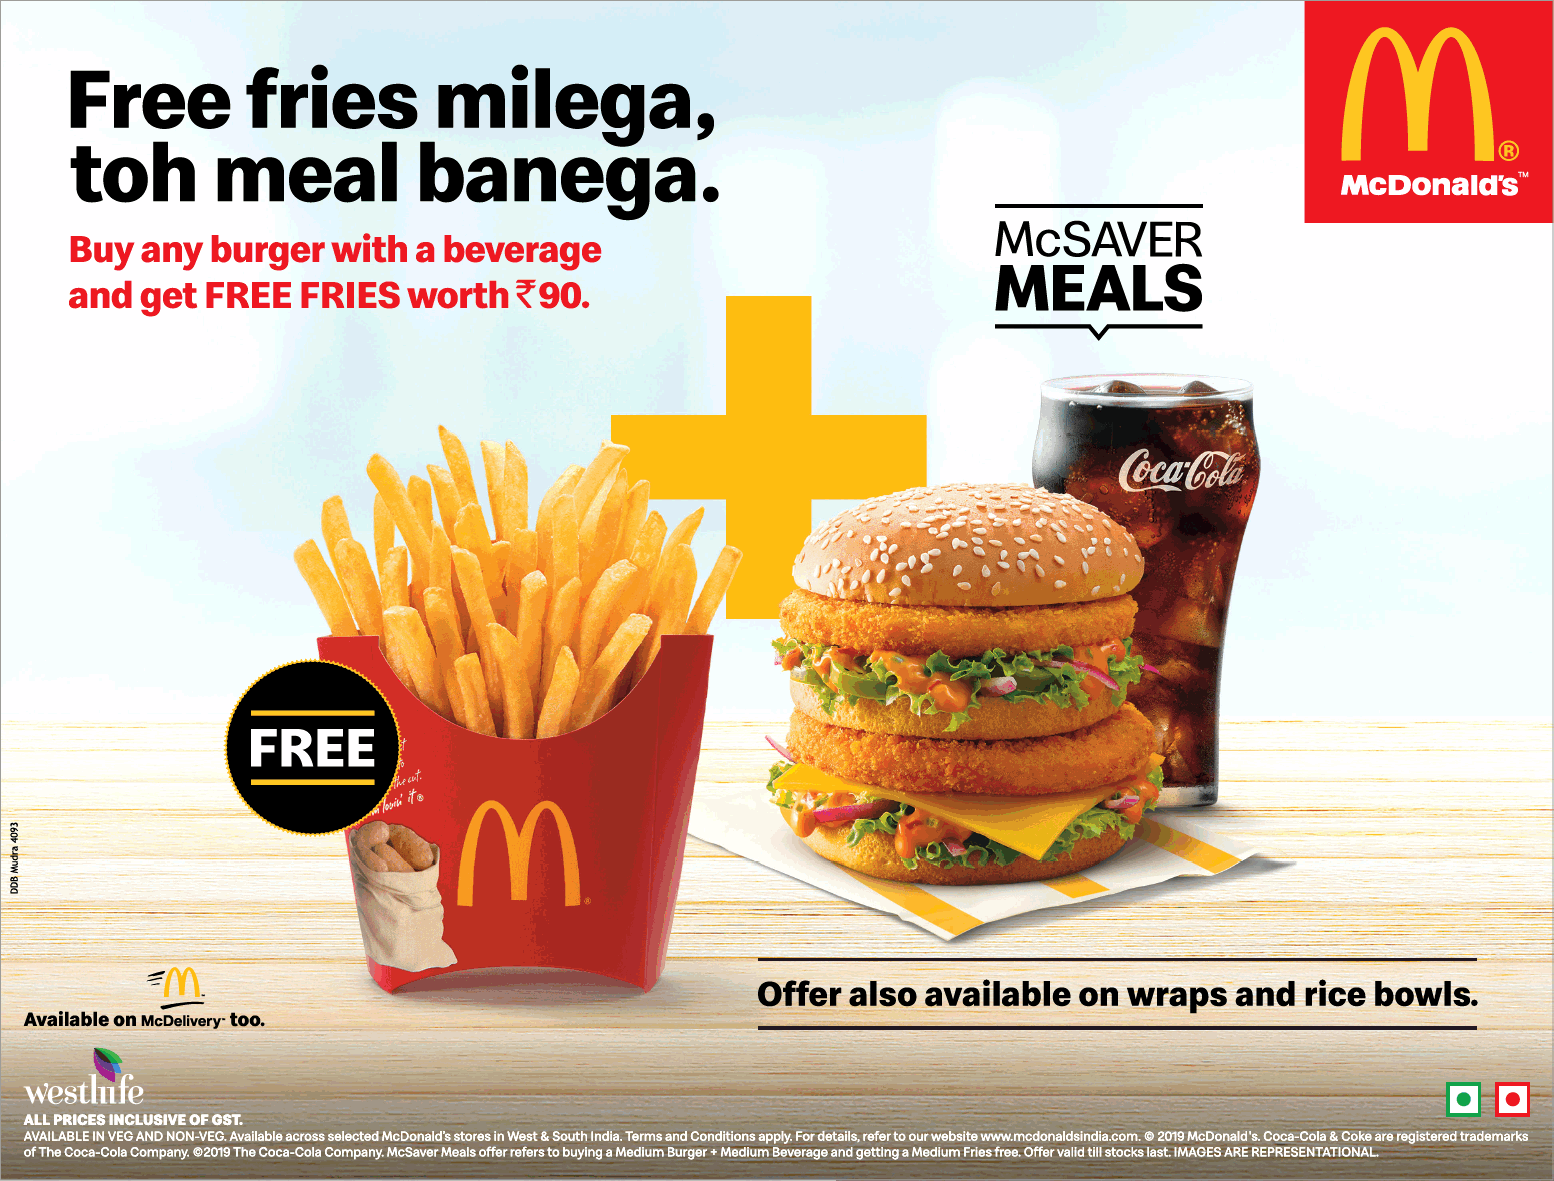 McDonald's: Pa pa pa papa • Ads of the World™